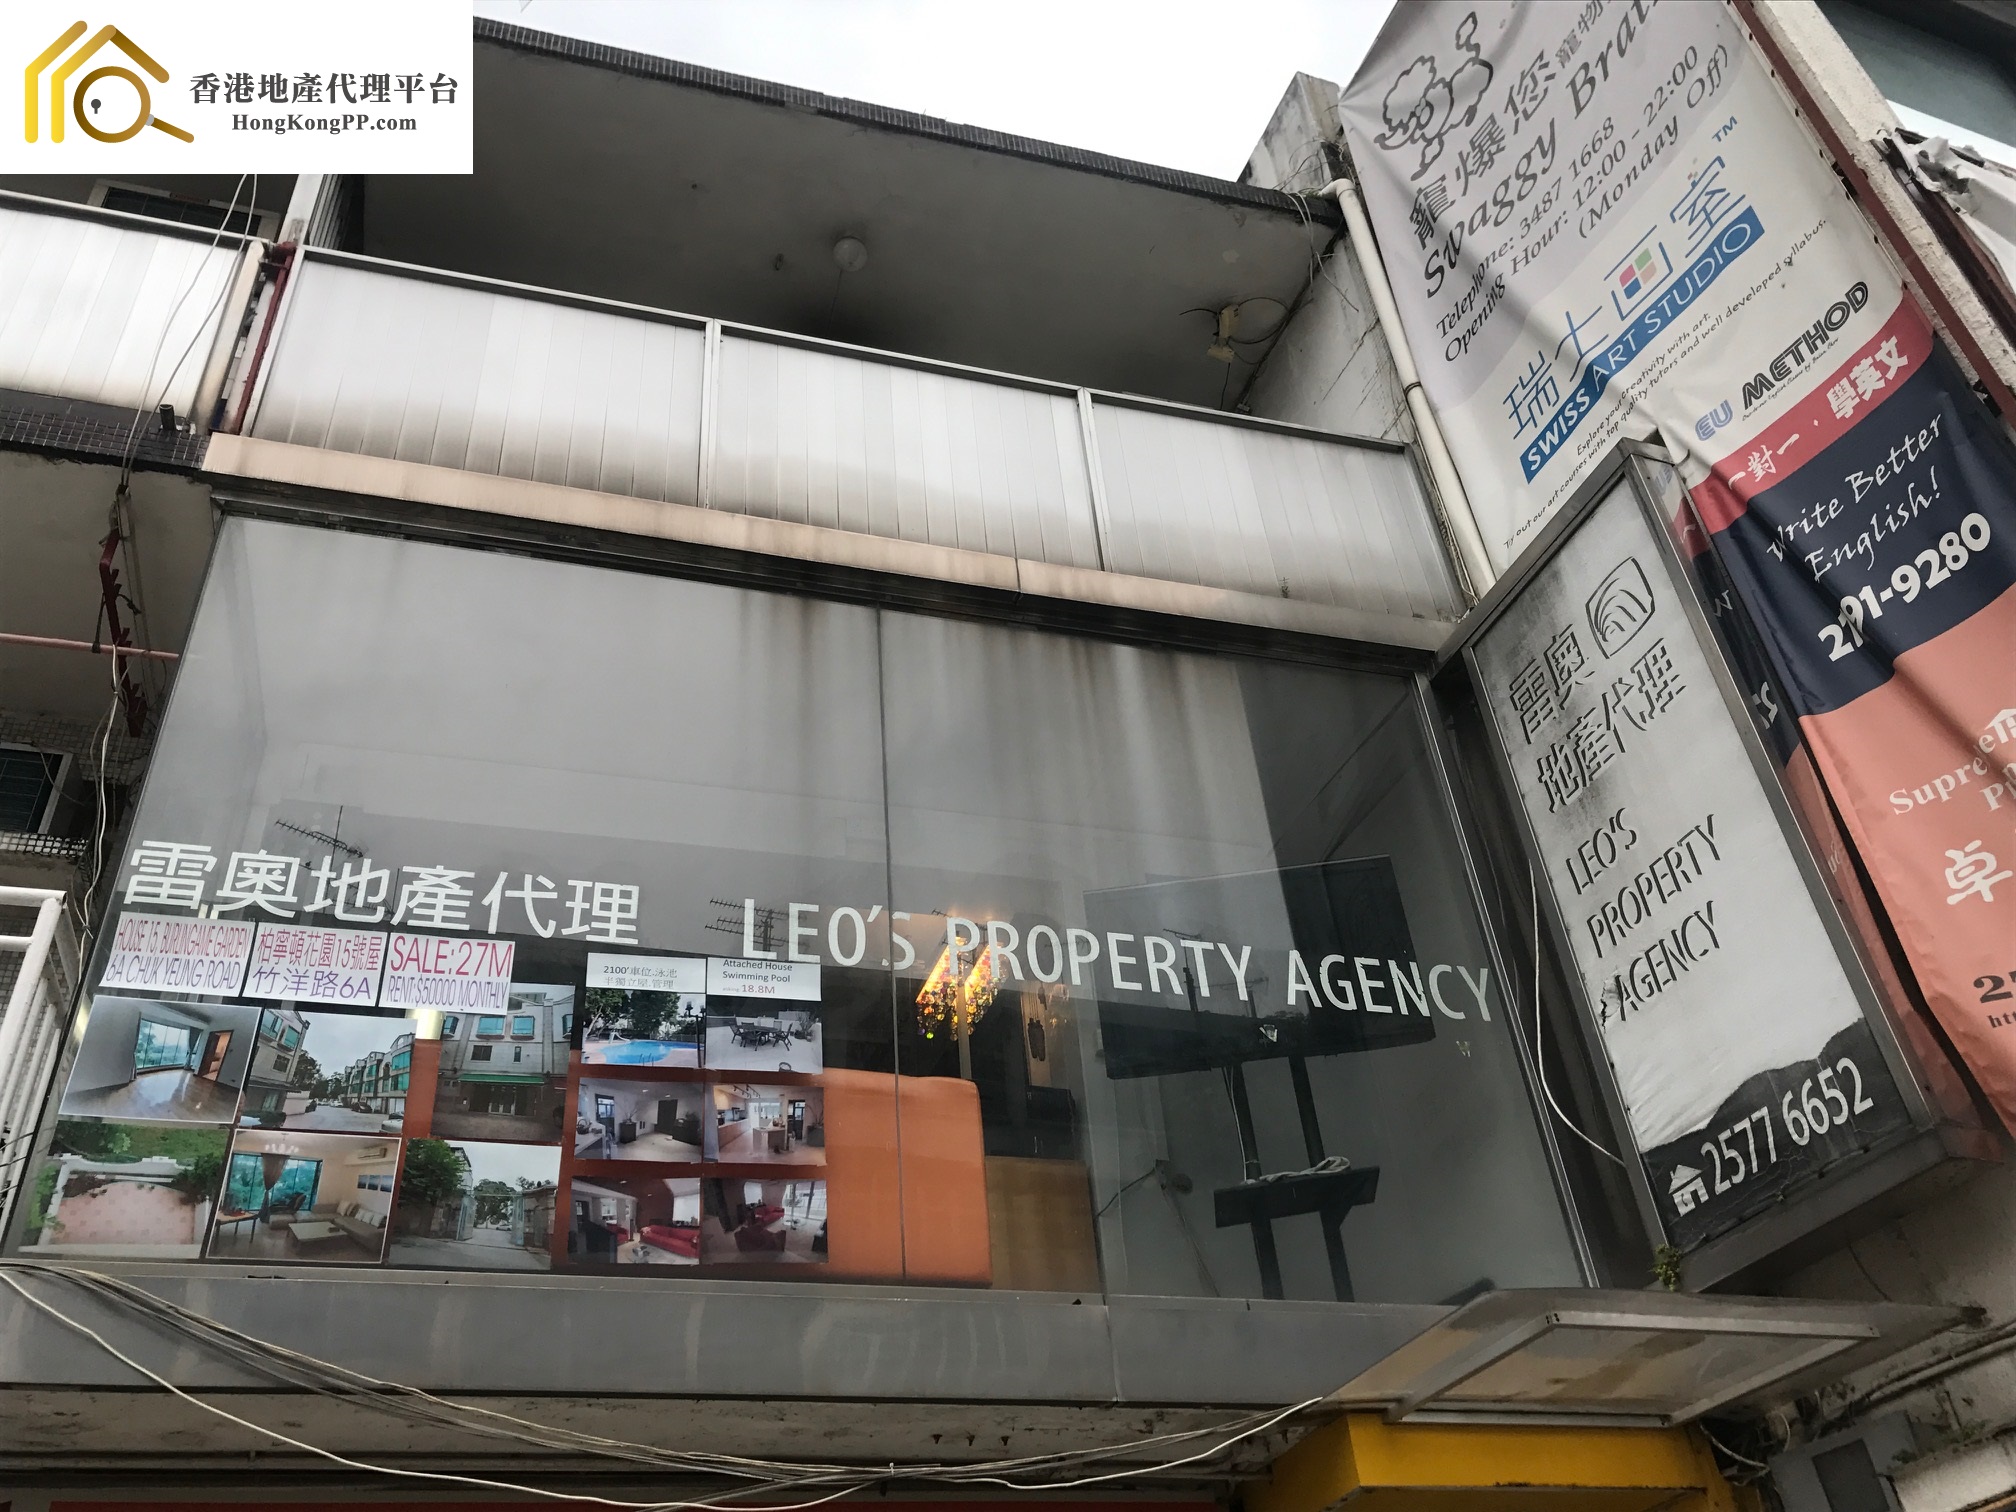 地產代理公司: 雷奧地產 LEO's Property Agency